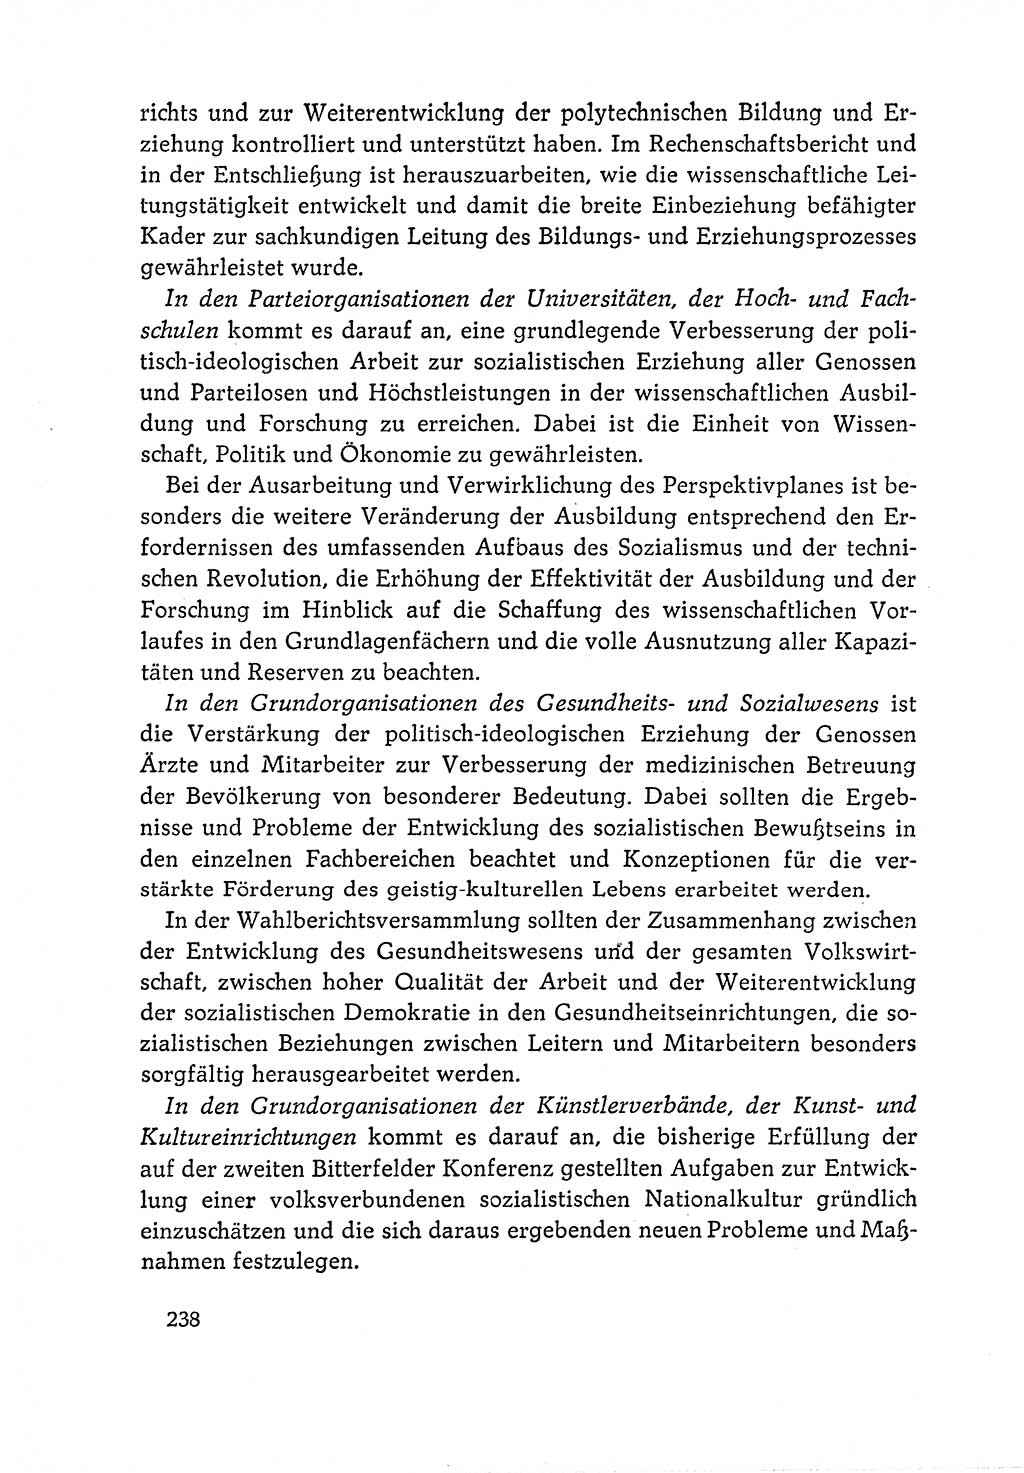 Dokumente der Sozialistischen Einheitspartei Deutschlands (SED) [Deutsche Demokratische Republik (DDR)] 1964-1965, Seite 238 (Dok. SED DDR 1964-1965, S. 238)